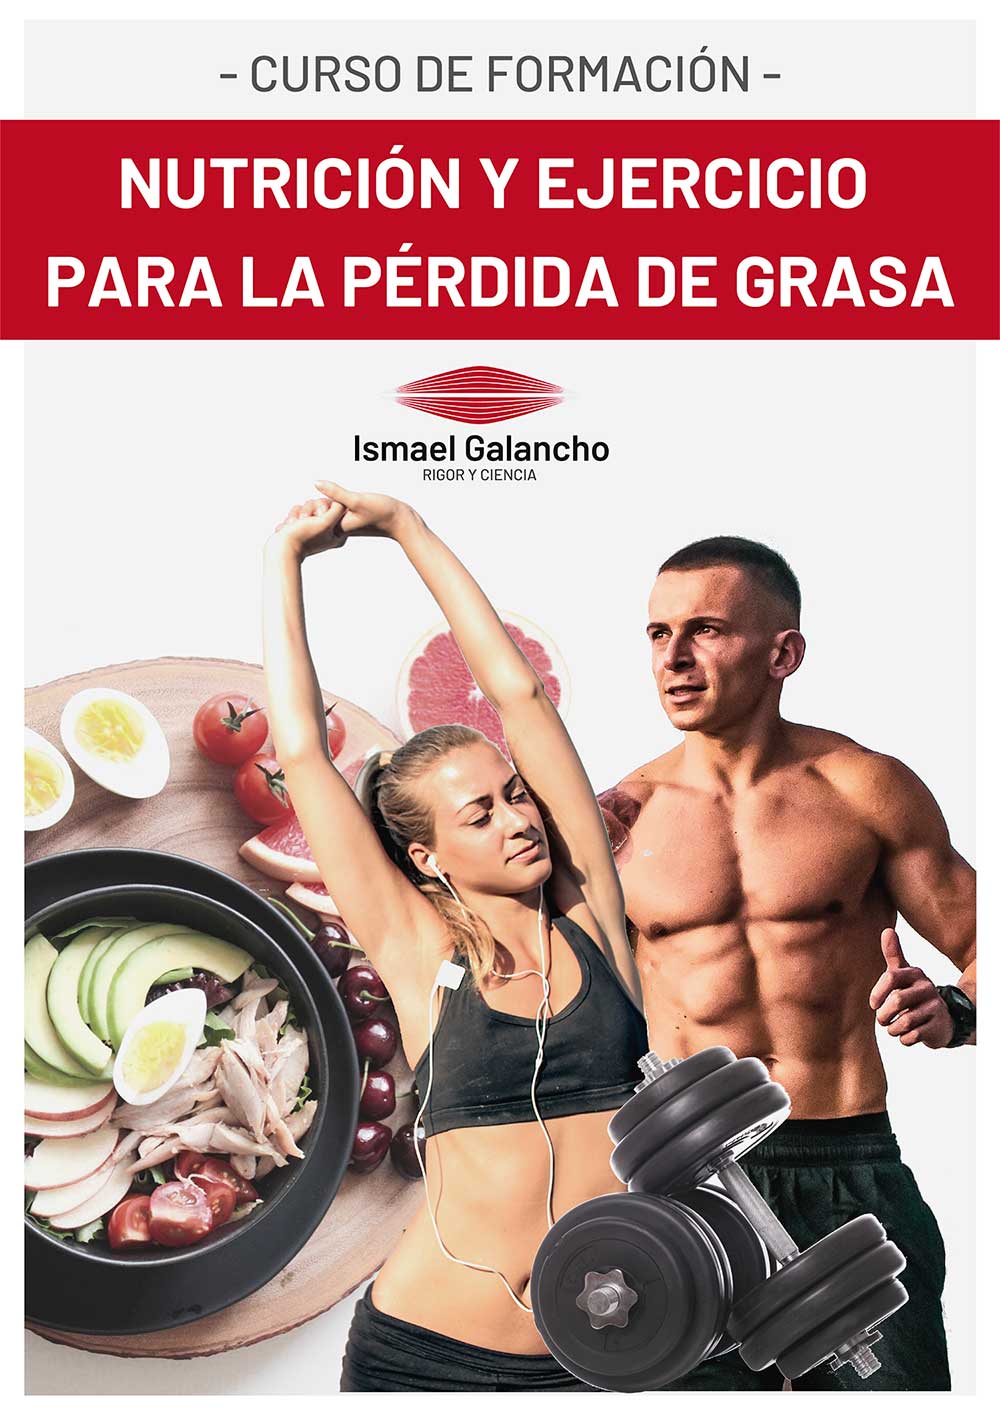 Curso de nutrición y ejercicio para la pérdida de grasa | Ismael Galancho